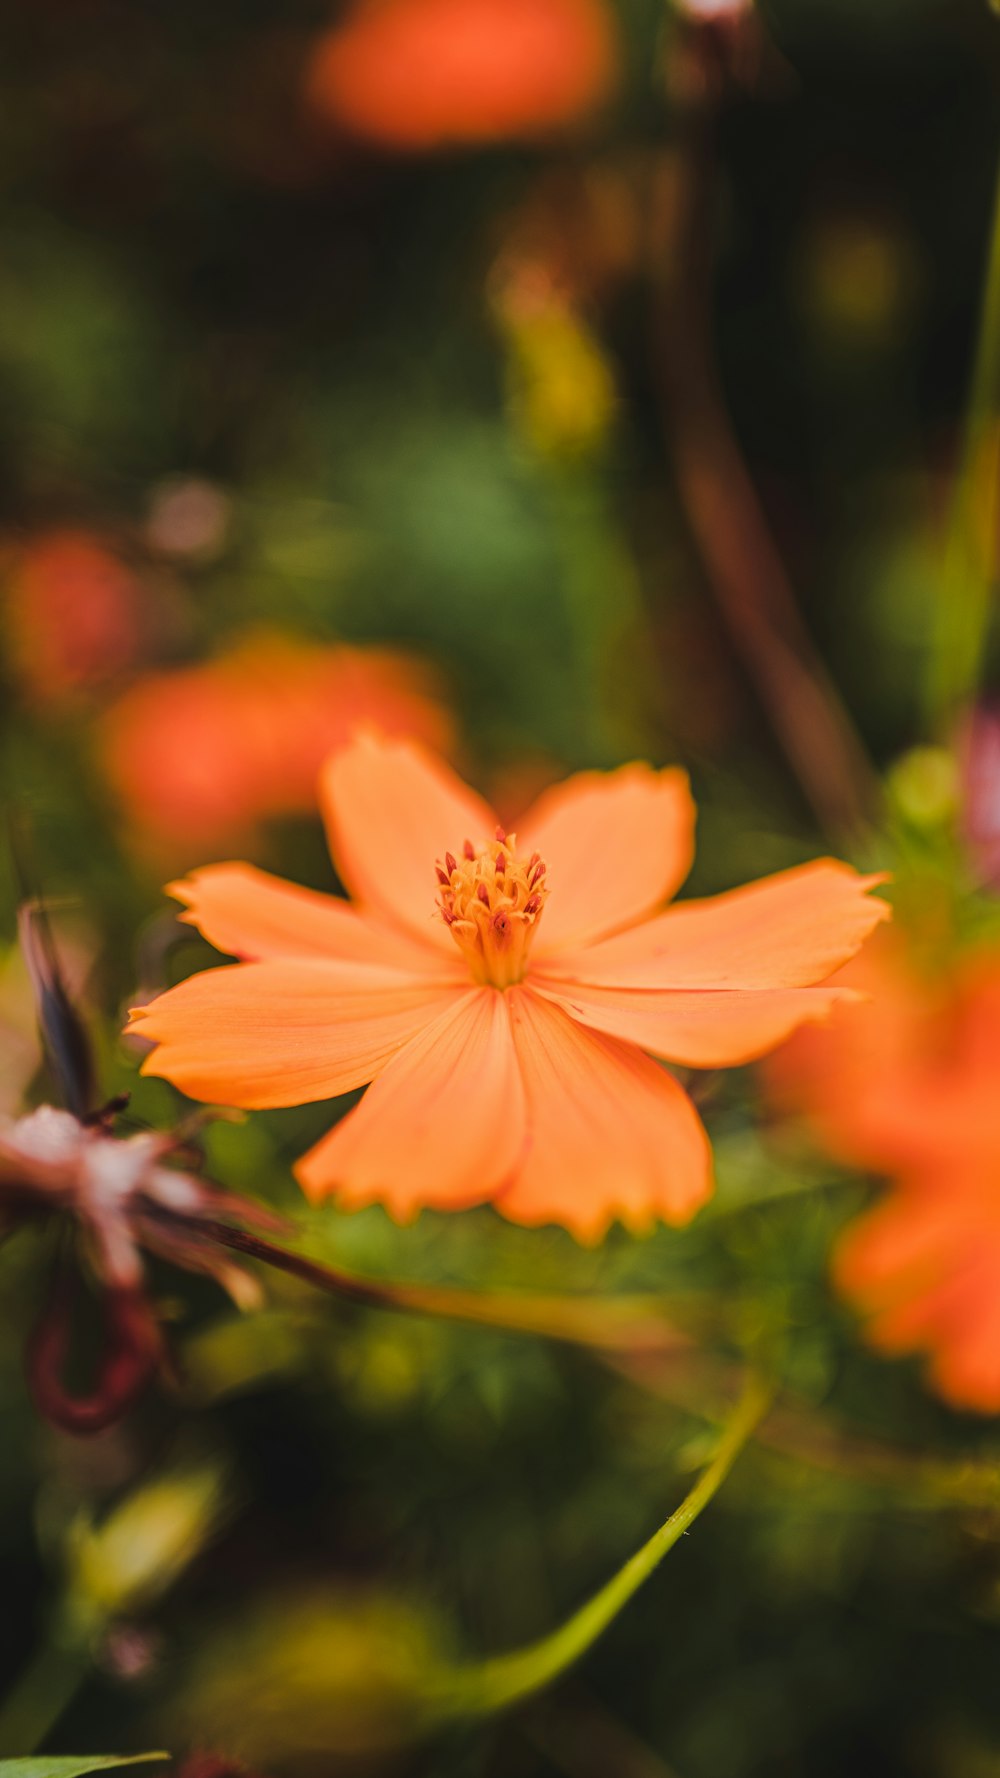 Un primer plano de una flor naranja con otras flores en el fondo